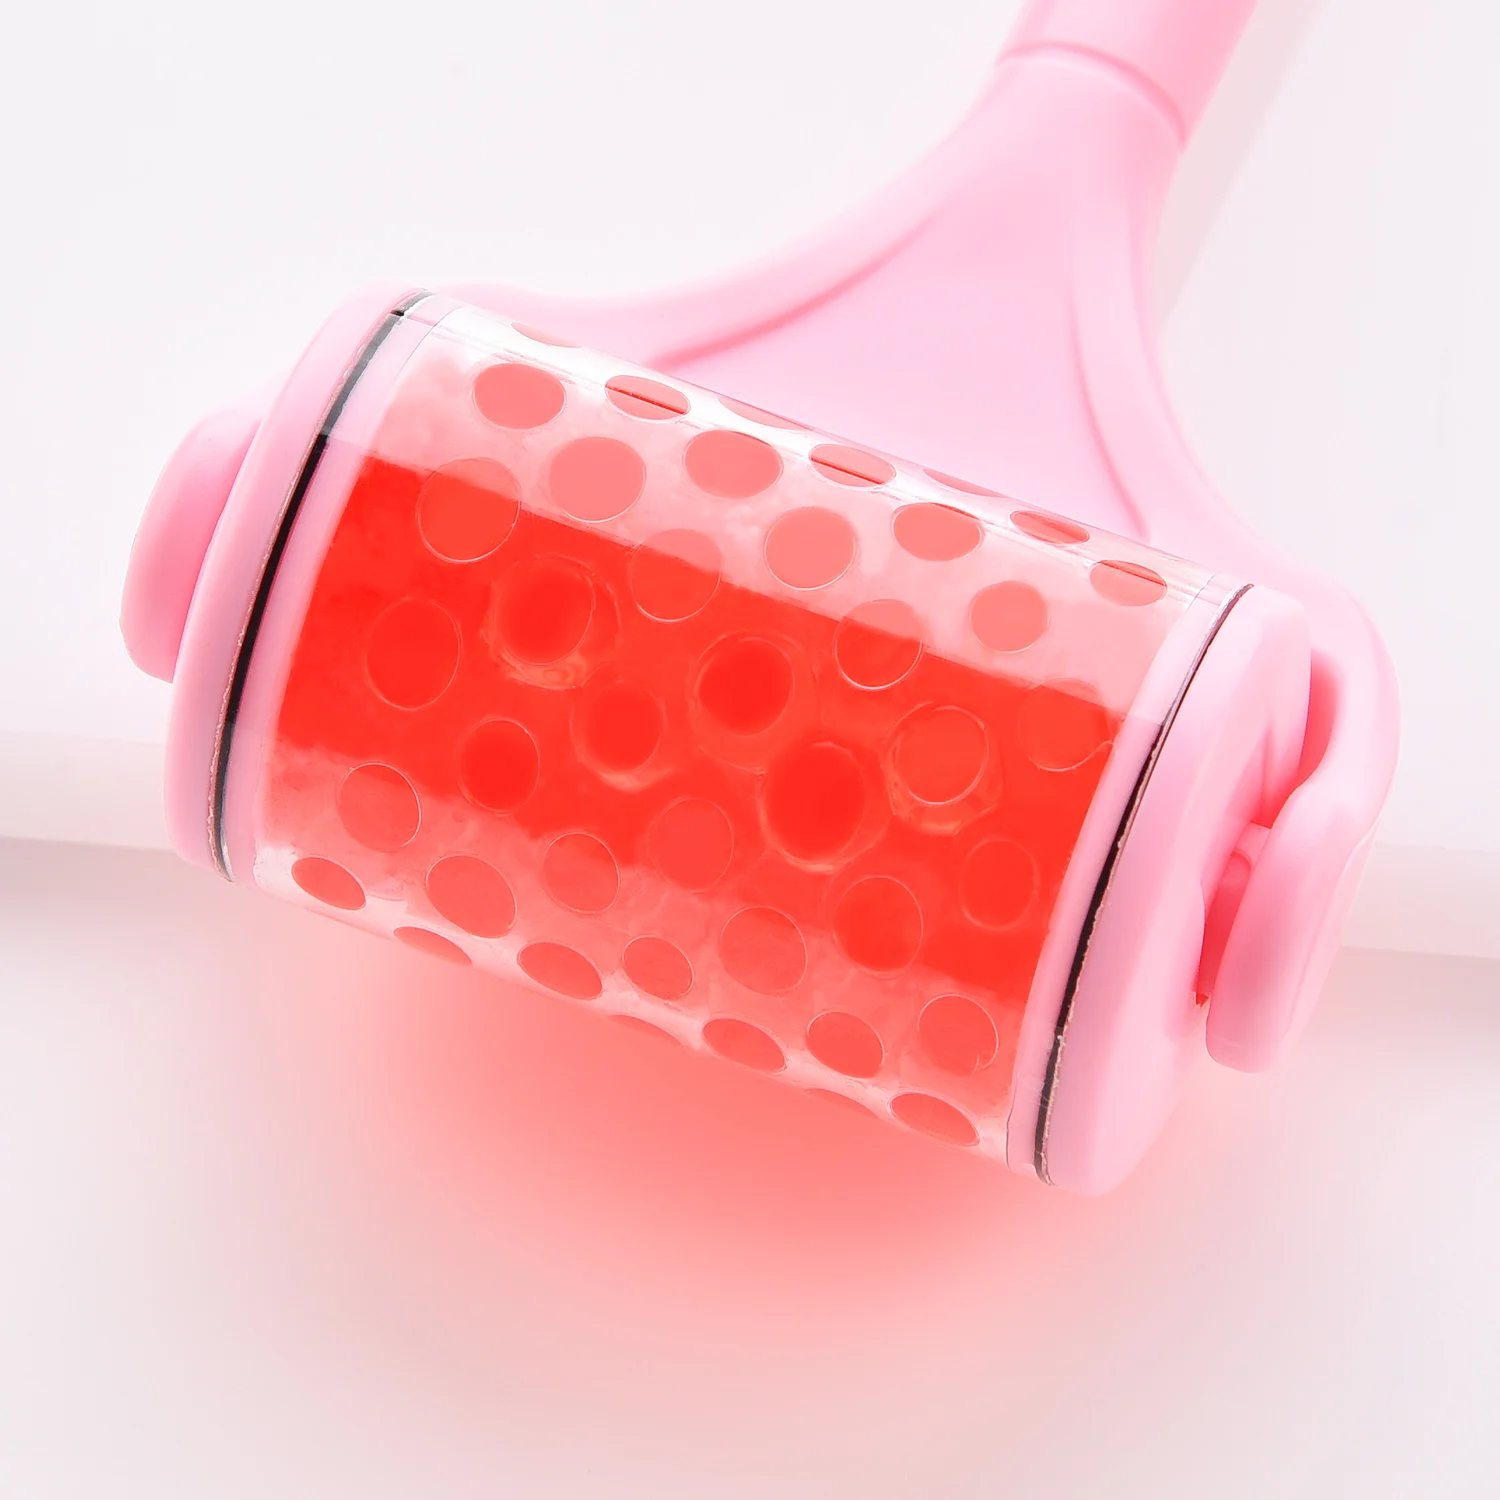 Антицеллюлитный массаж для лица лифтинг кисти 2 цвета сотовый ролик массажер мини колесо мяч пластиковая ручка инструмент для красоты